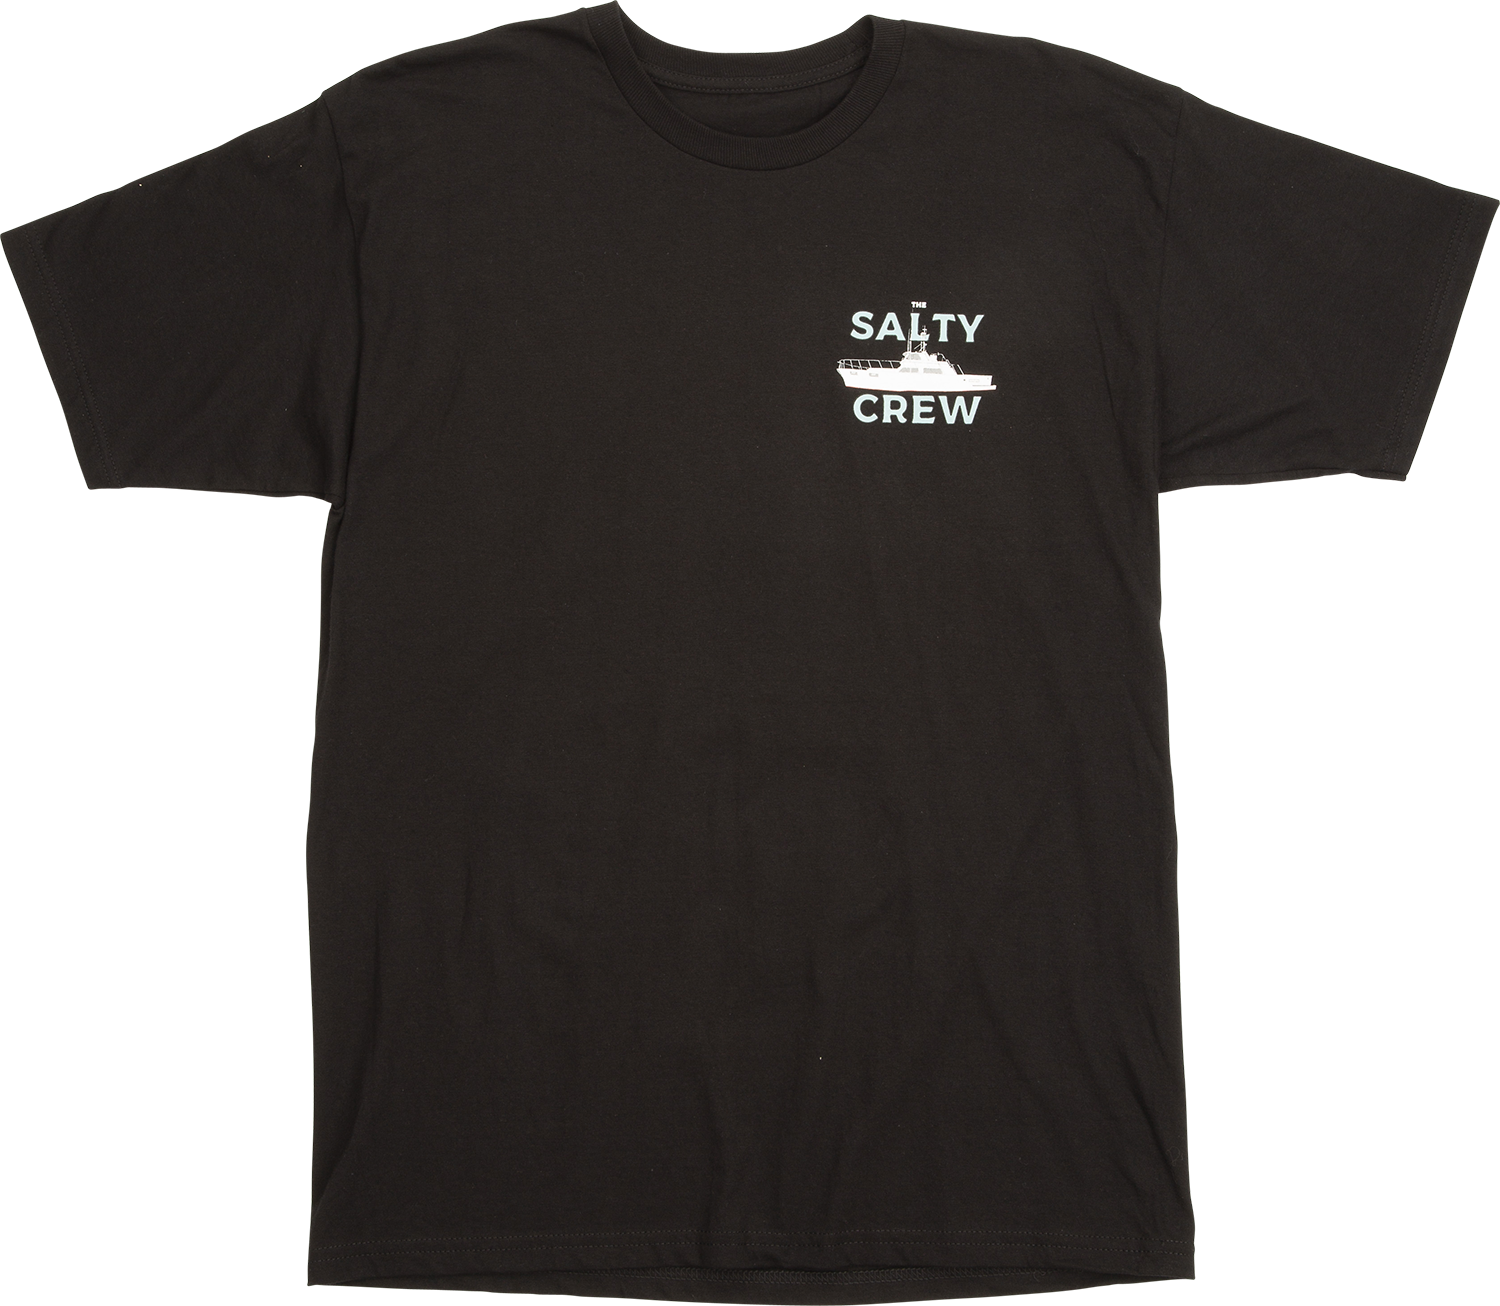 Sportfisher S/S Tee T Shirts - Salty Crew Australia